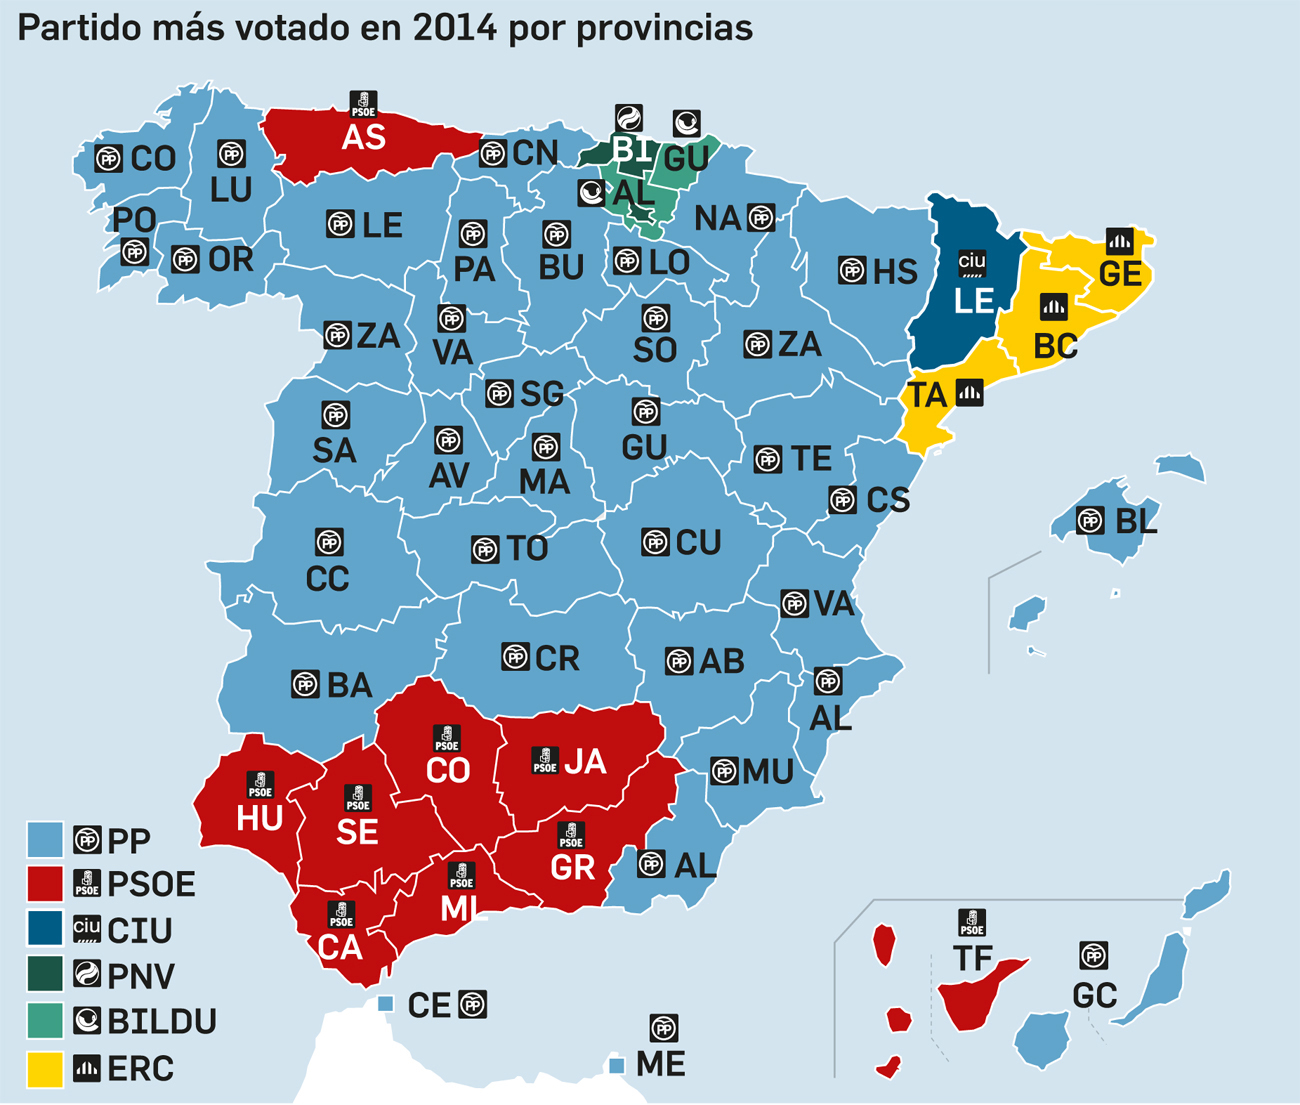 Mapa de España por provincias con el partido más votado en las europeas